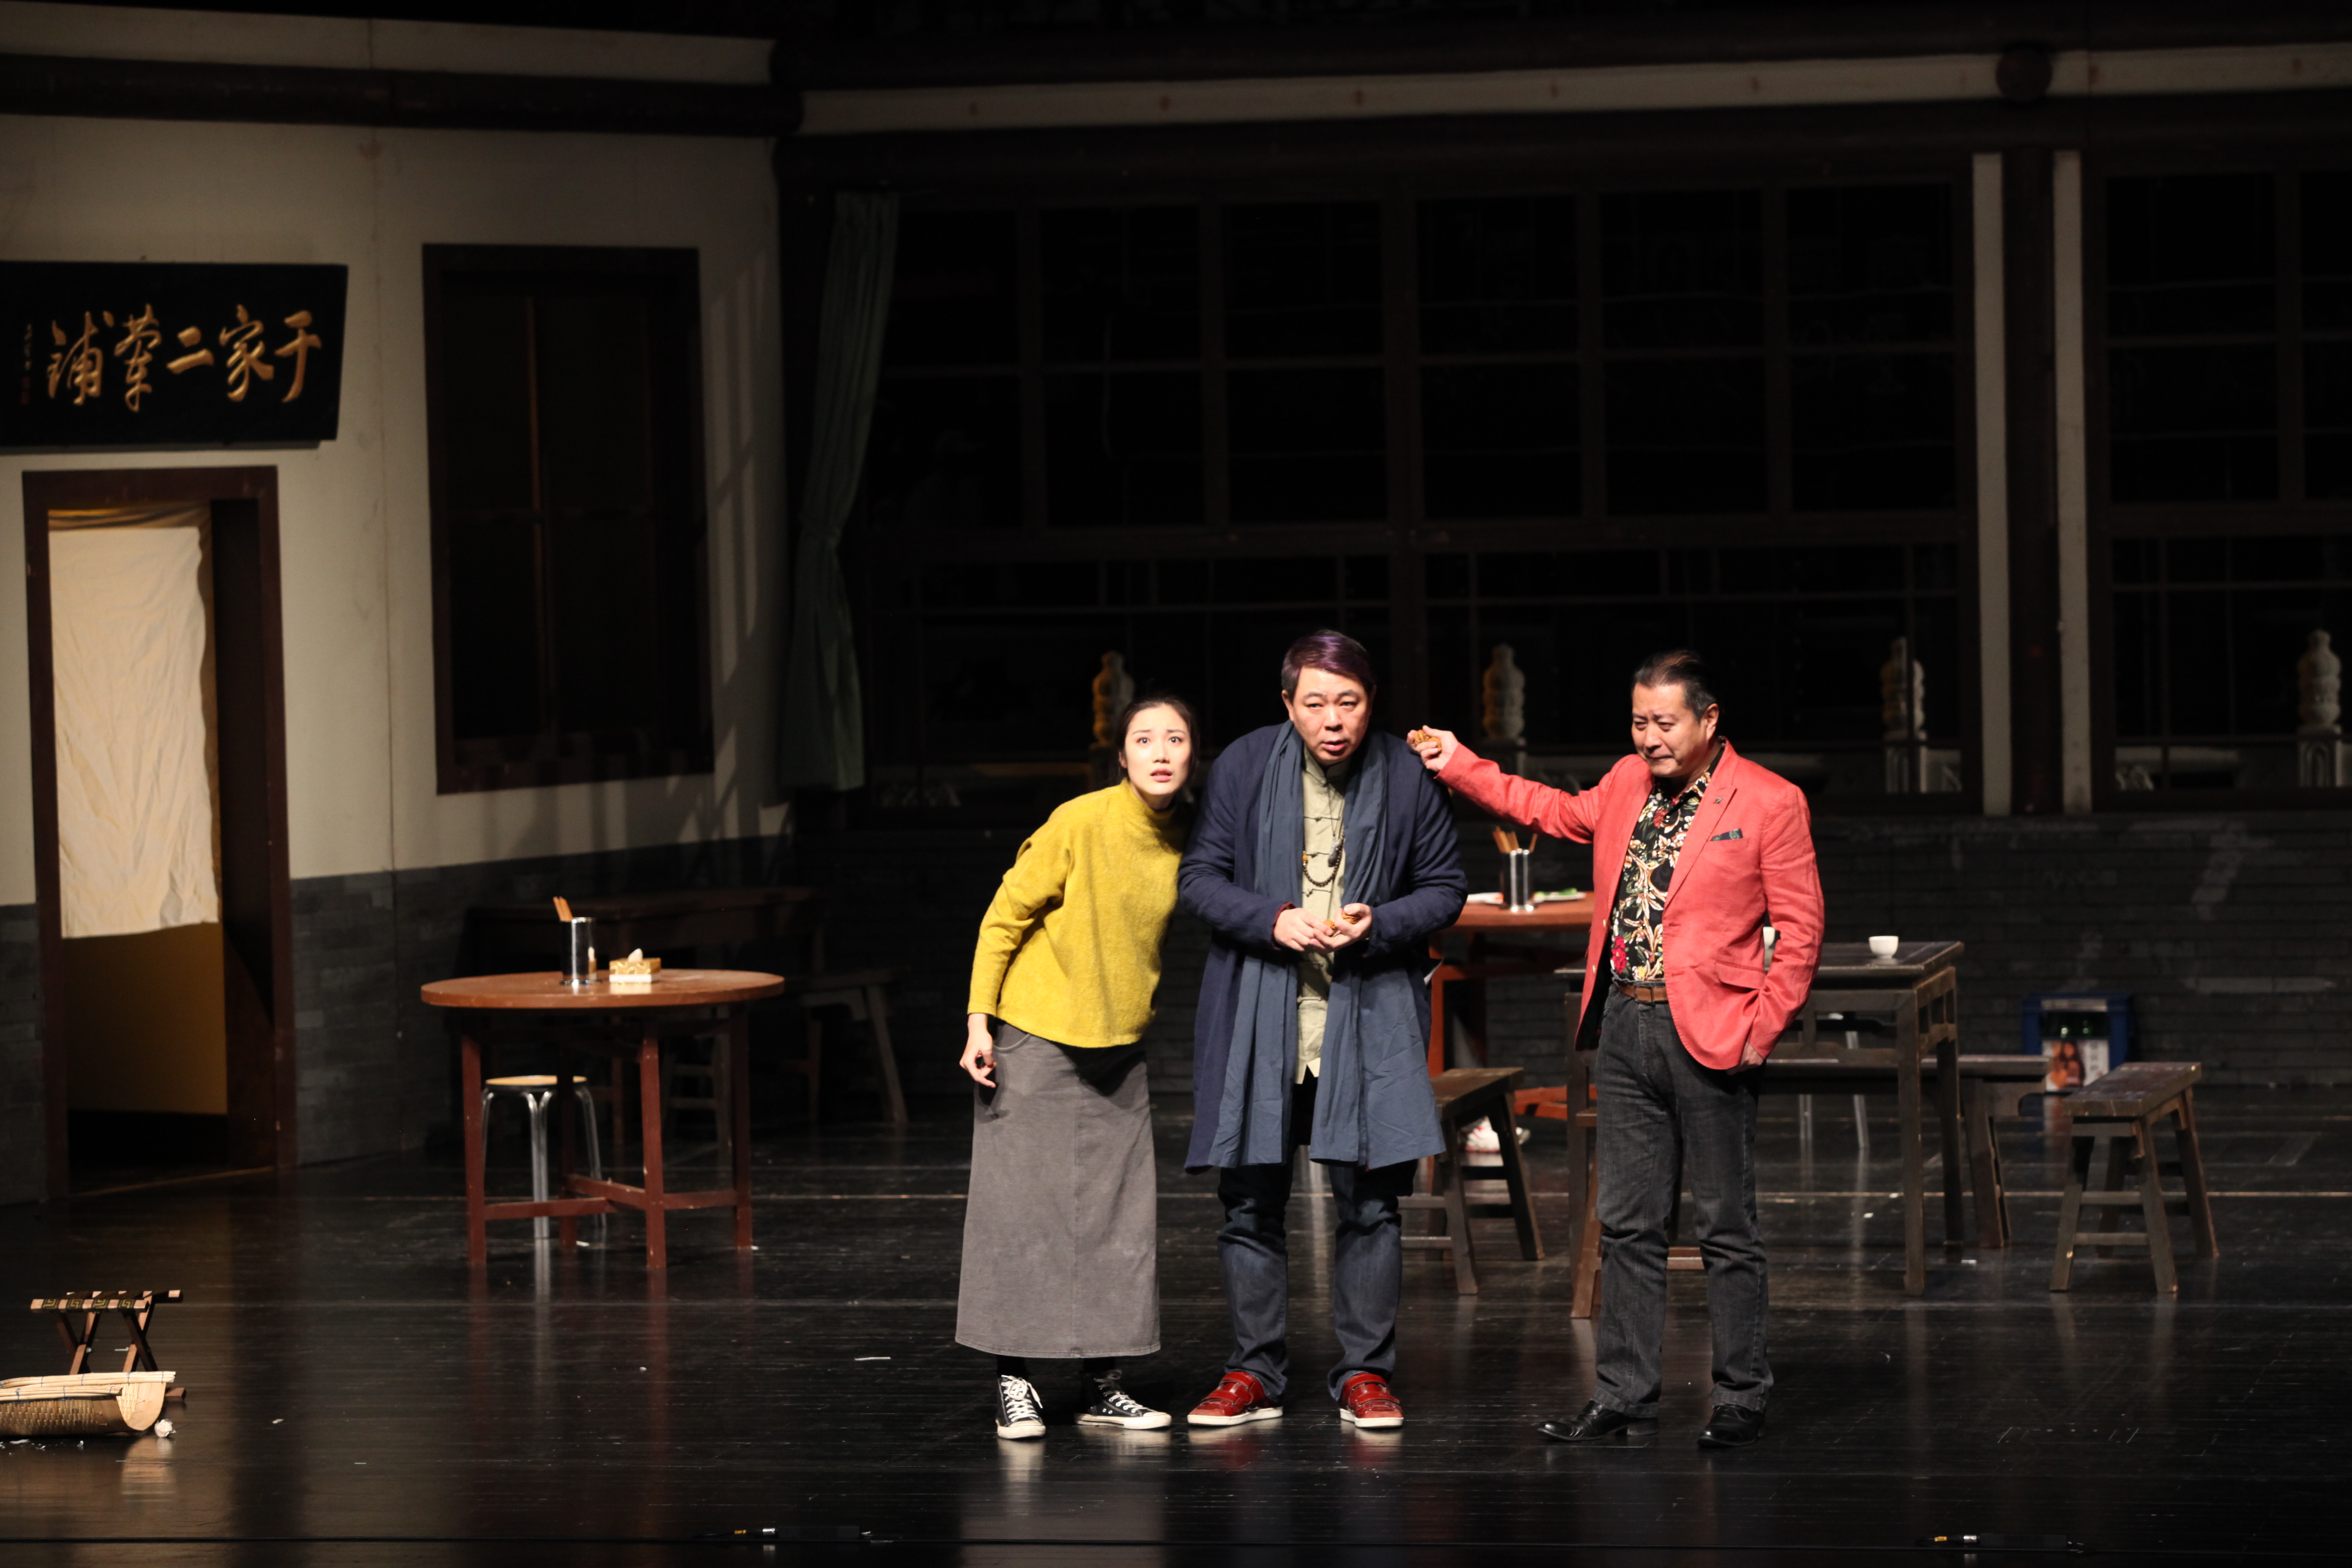 话剧《银锭桥》获第七届国际戏剧学院奖